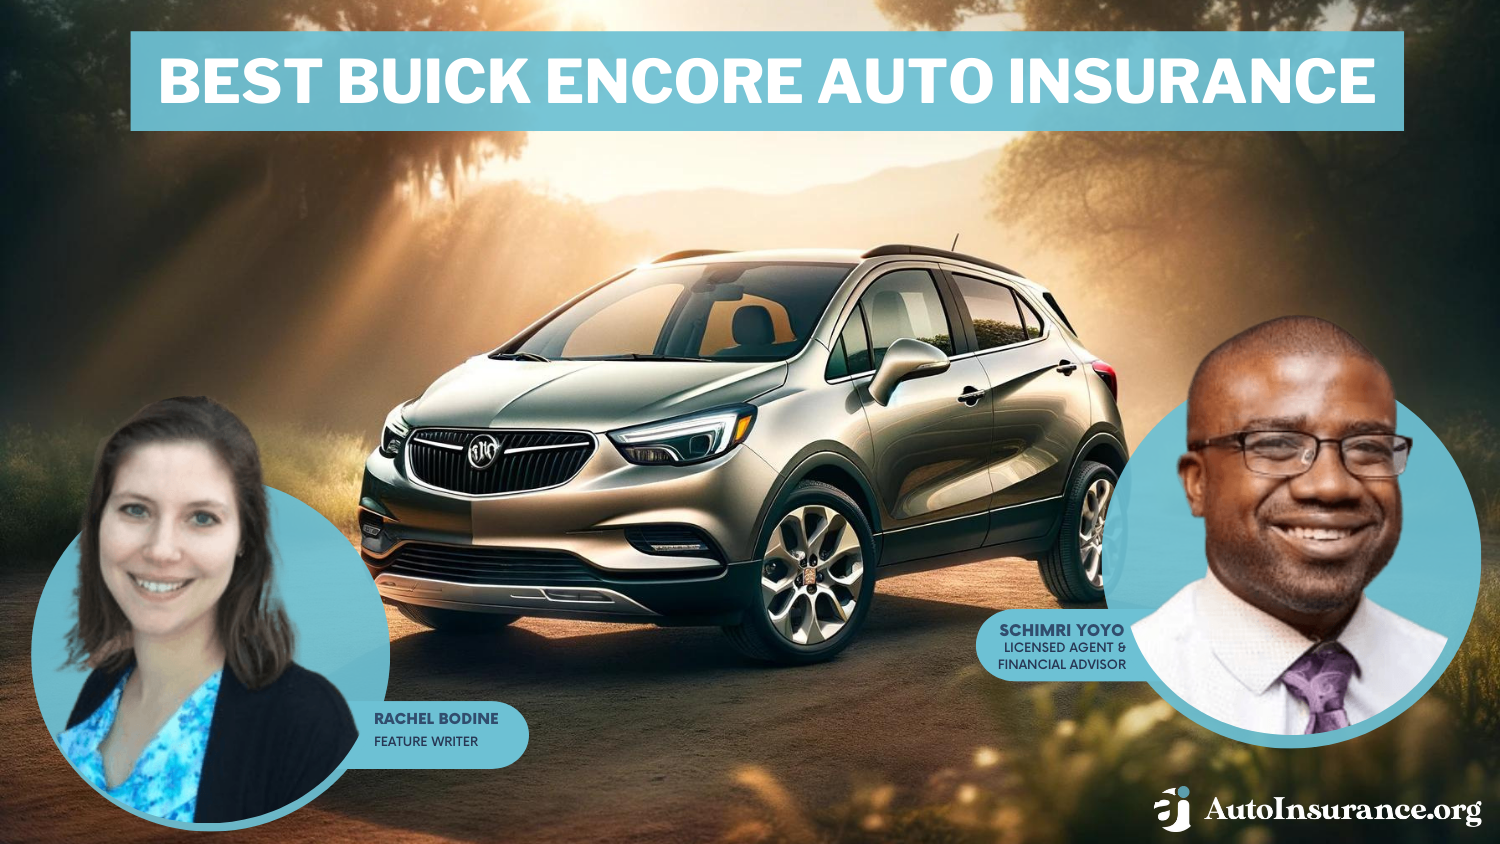 Best Buick Encore Auto Insurance: Progressive, State Farm, and Allstate.